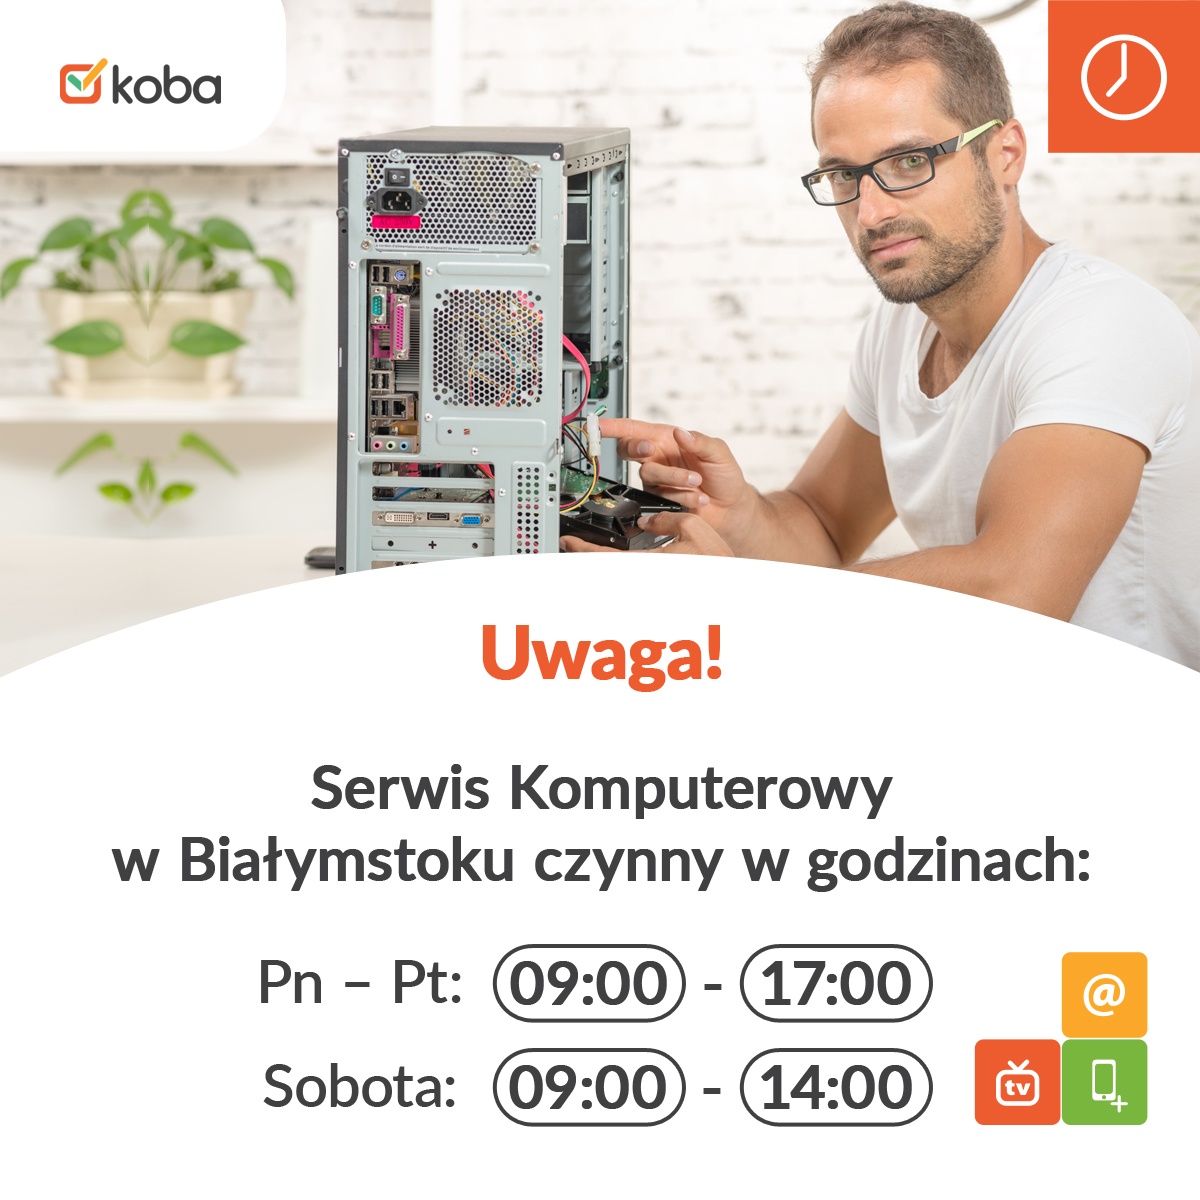 Uwaga! Serwis Komputerowy w Białymstoku będzie czynny: 09:00 - 17:00